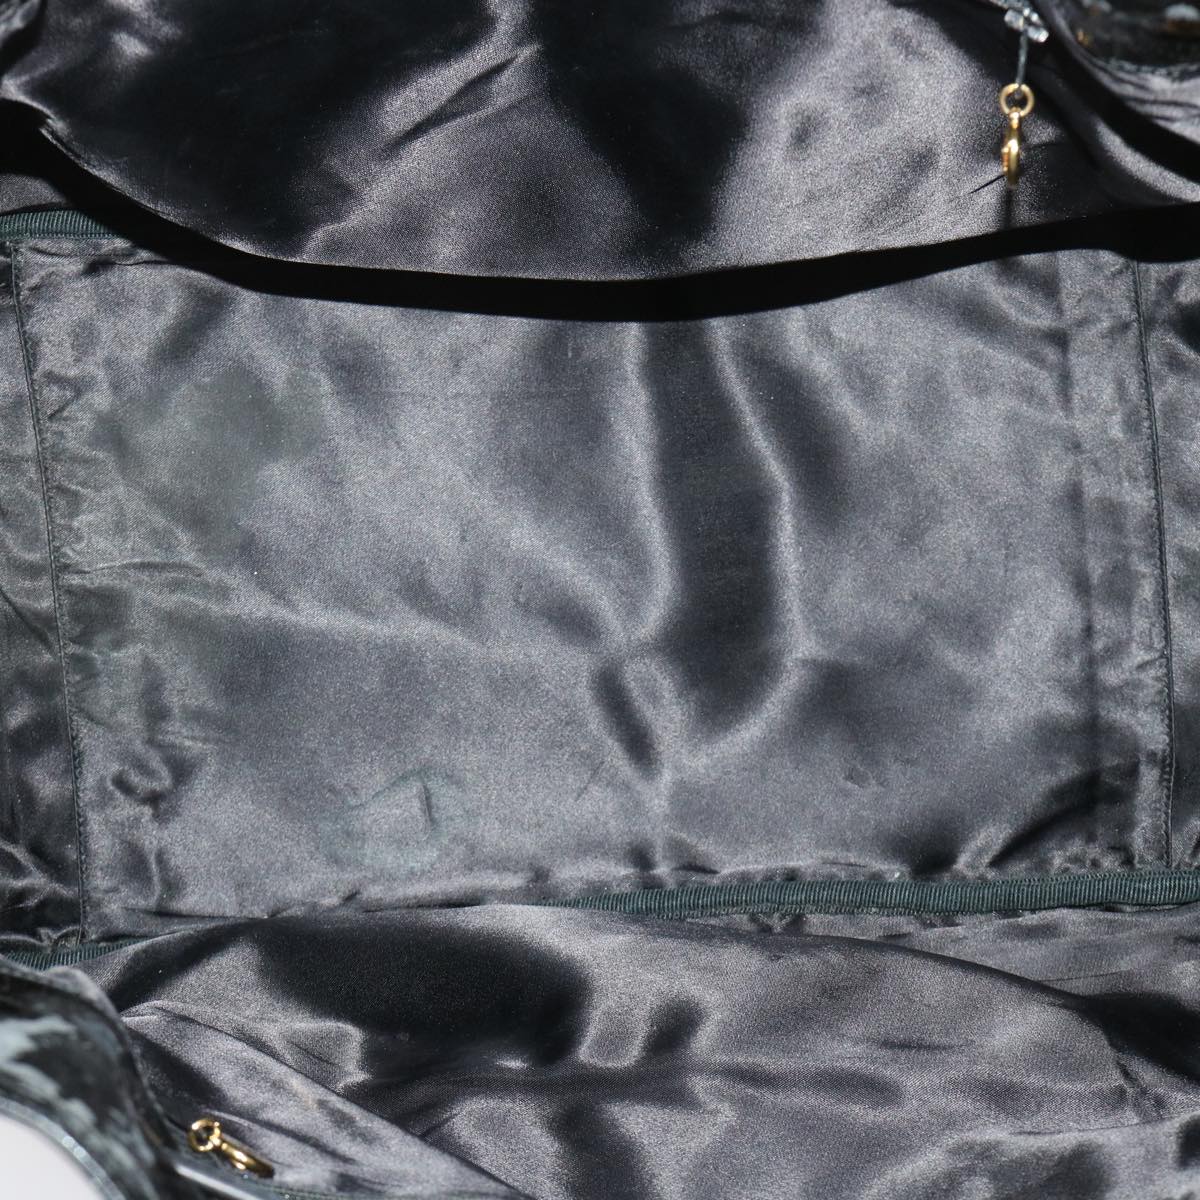 CHANEL Shoulder Bag Patent leather Black CC Auth bs6675